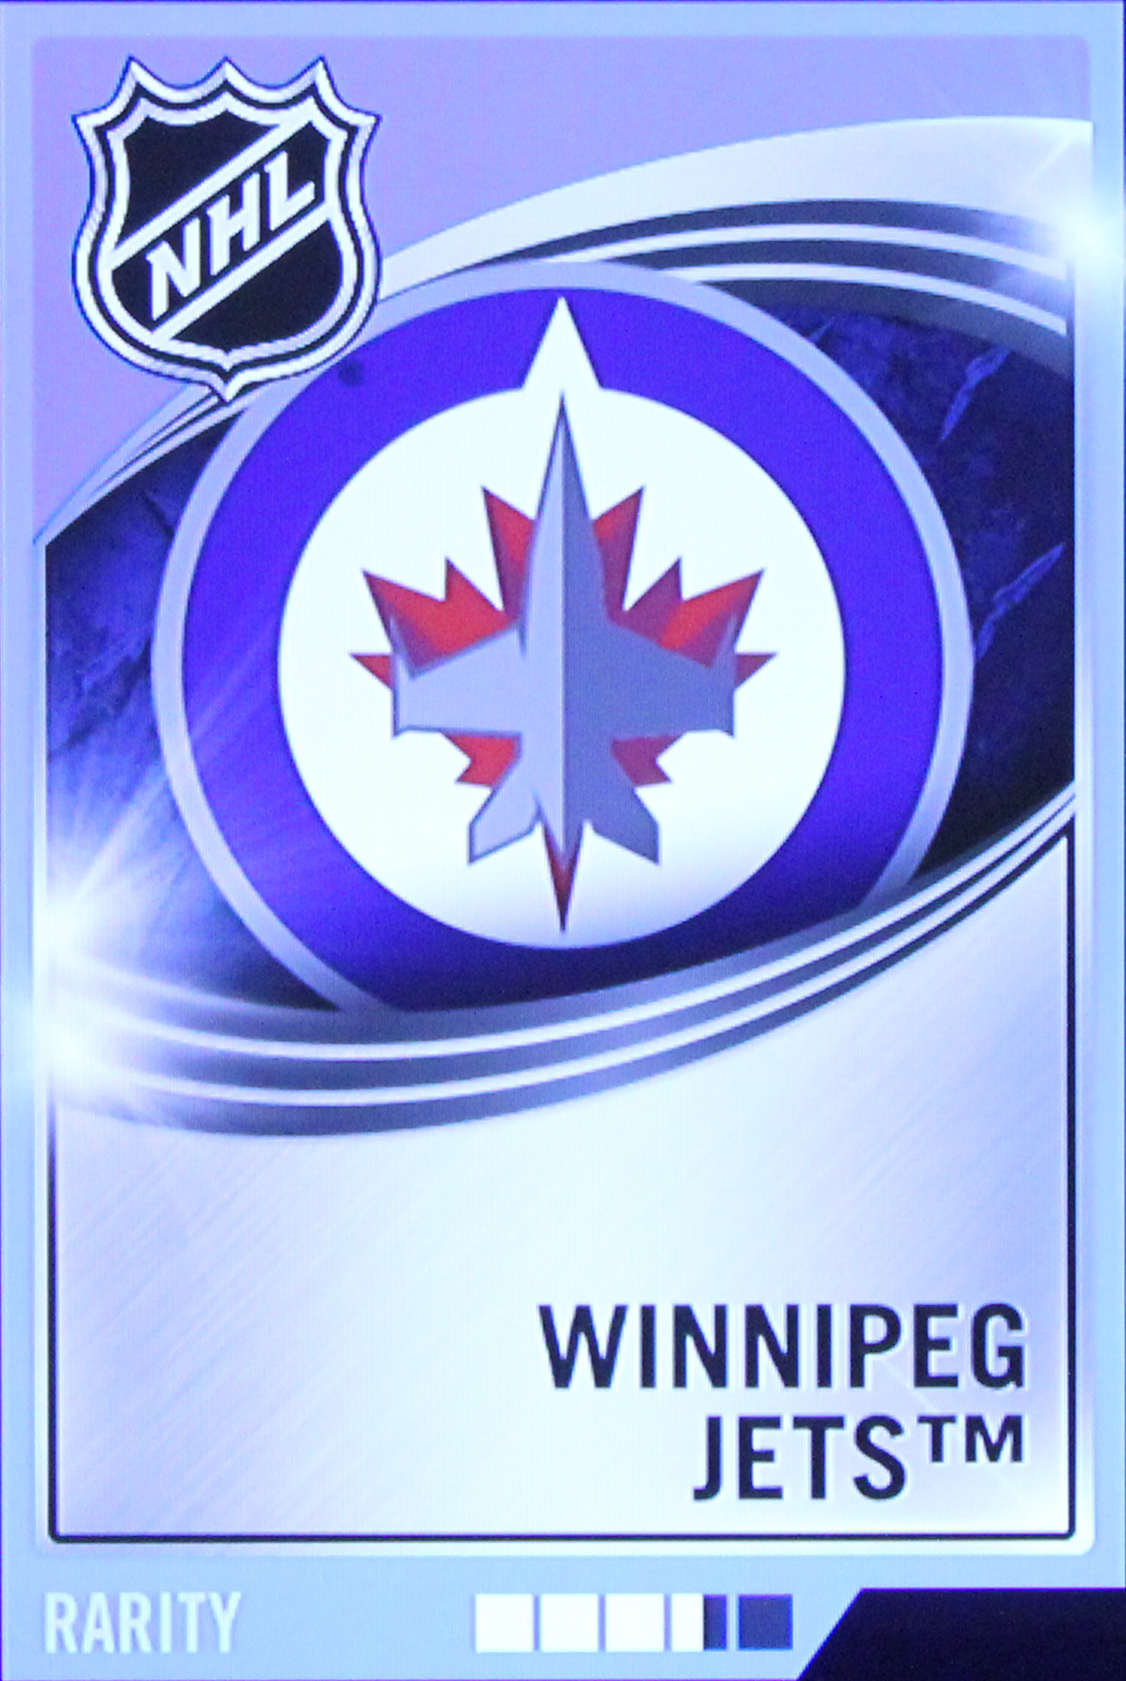 HQ Winnipeg Jets Wallpapers | File 1172.46Kb